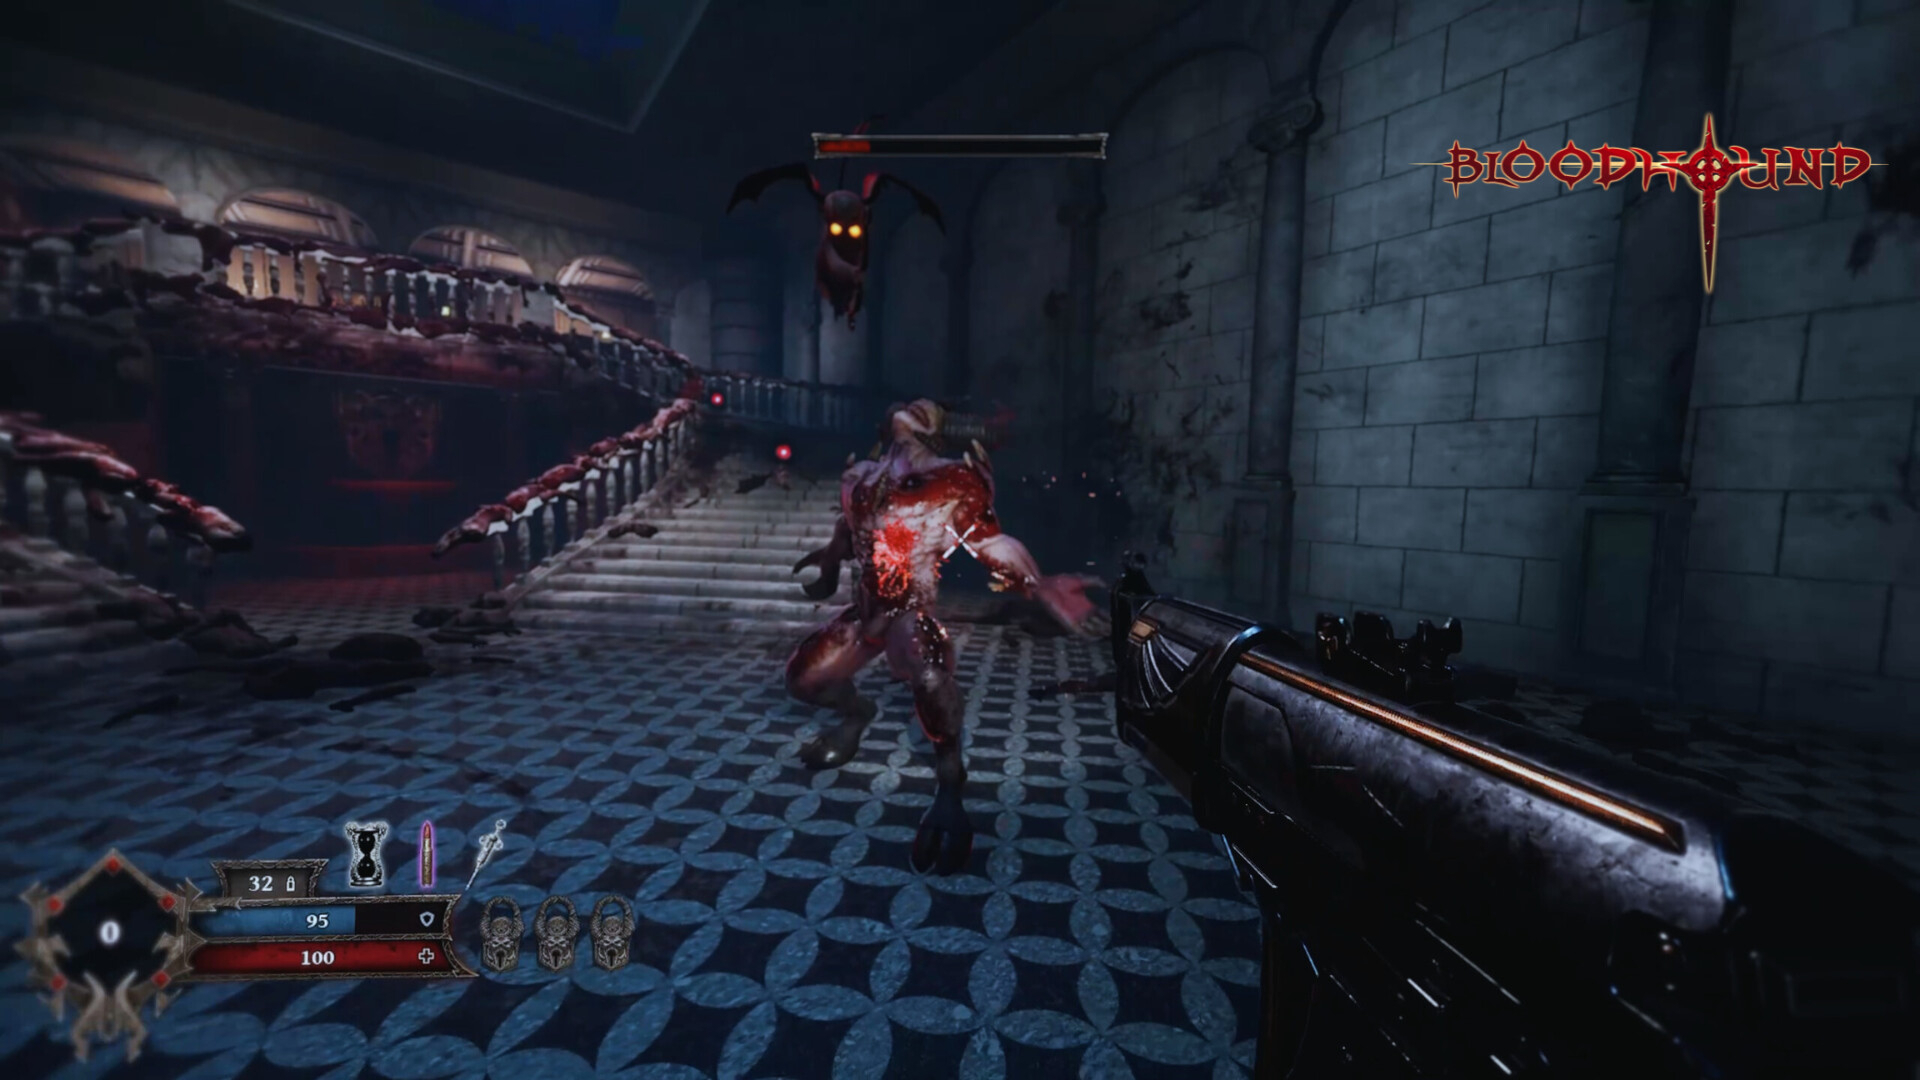 Скриншот из игры Bloodhound под номером 2